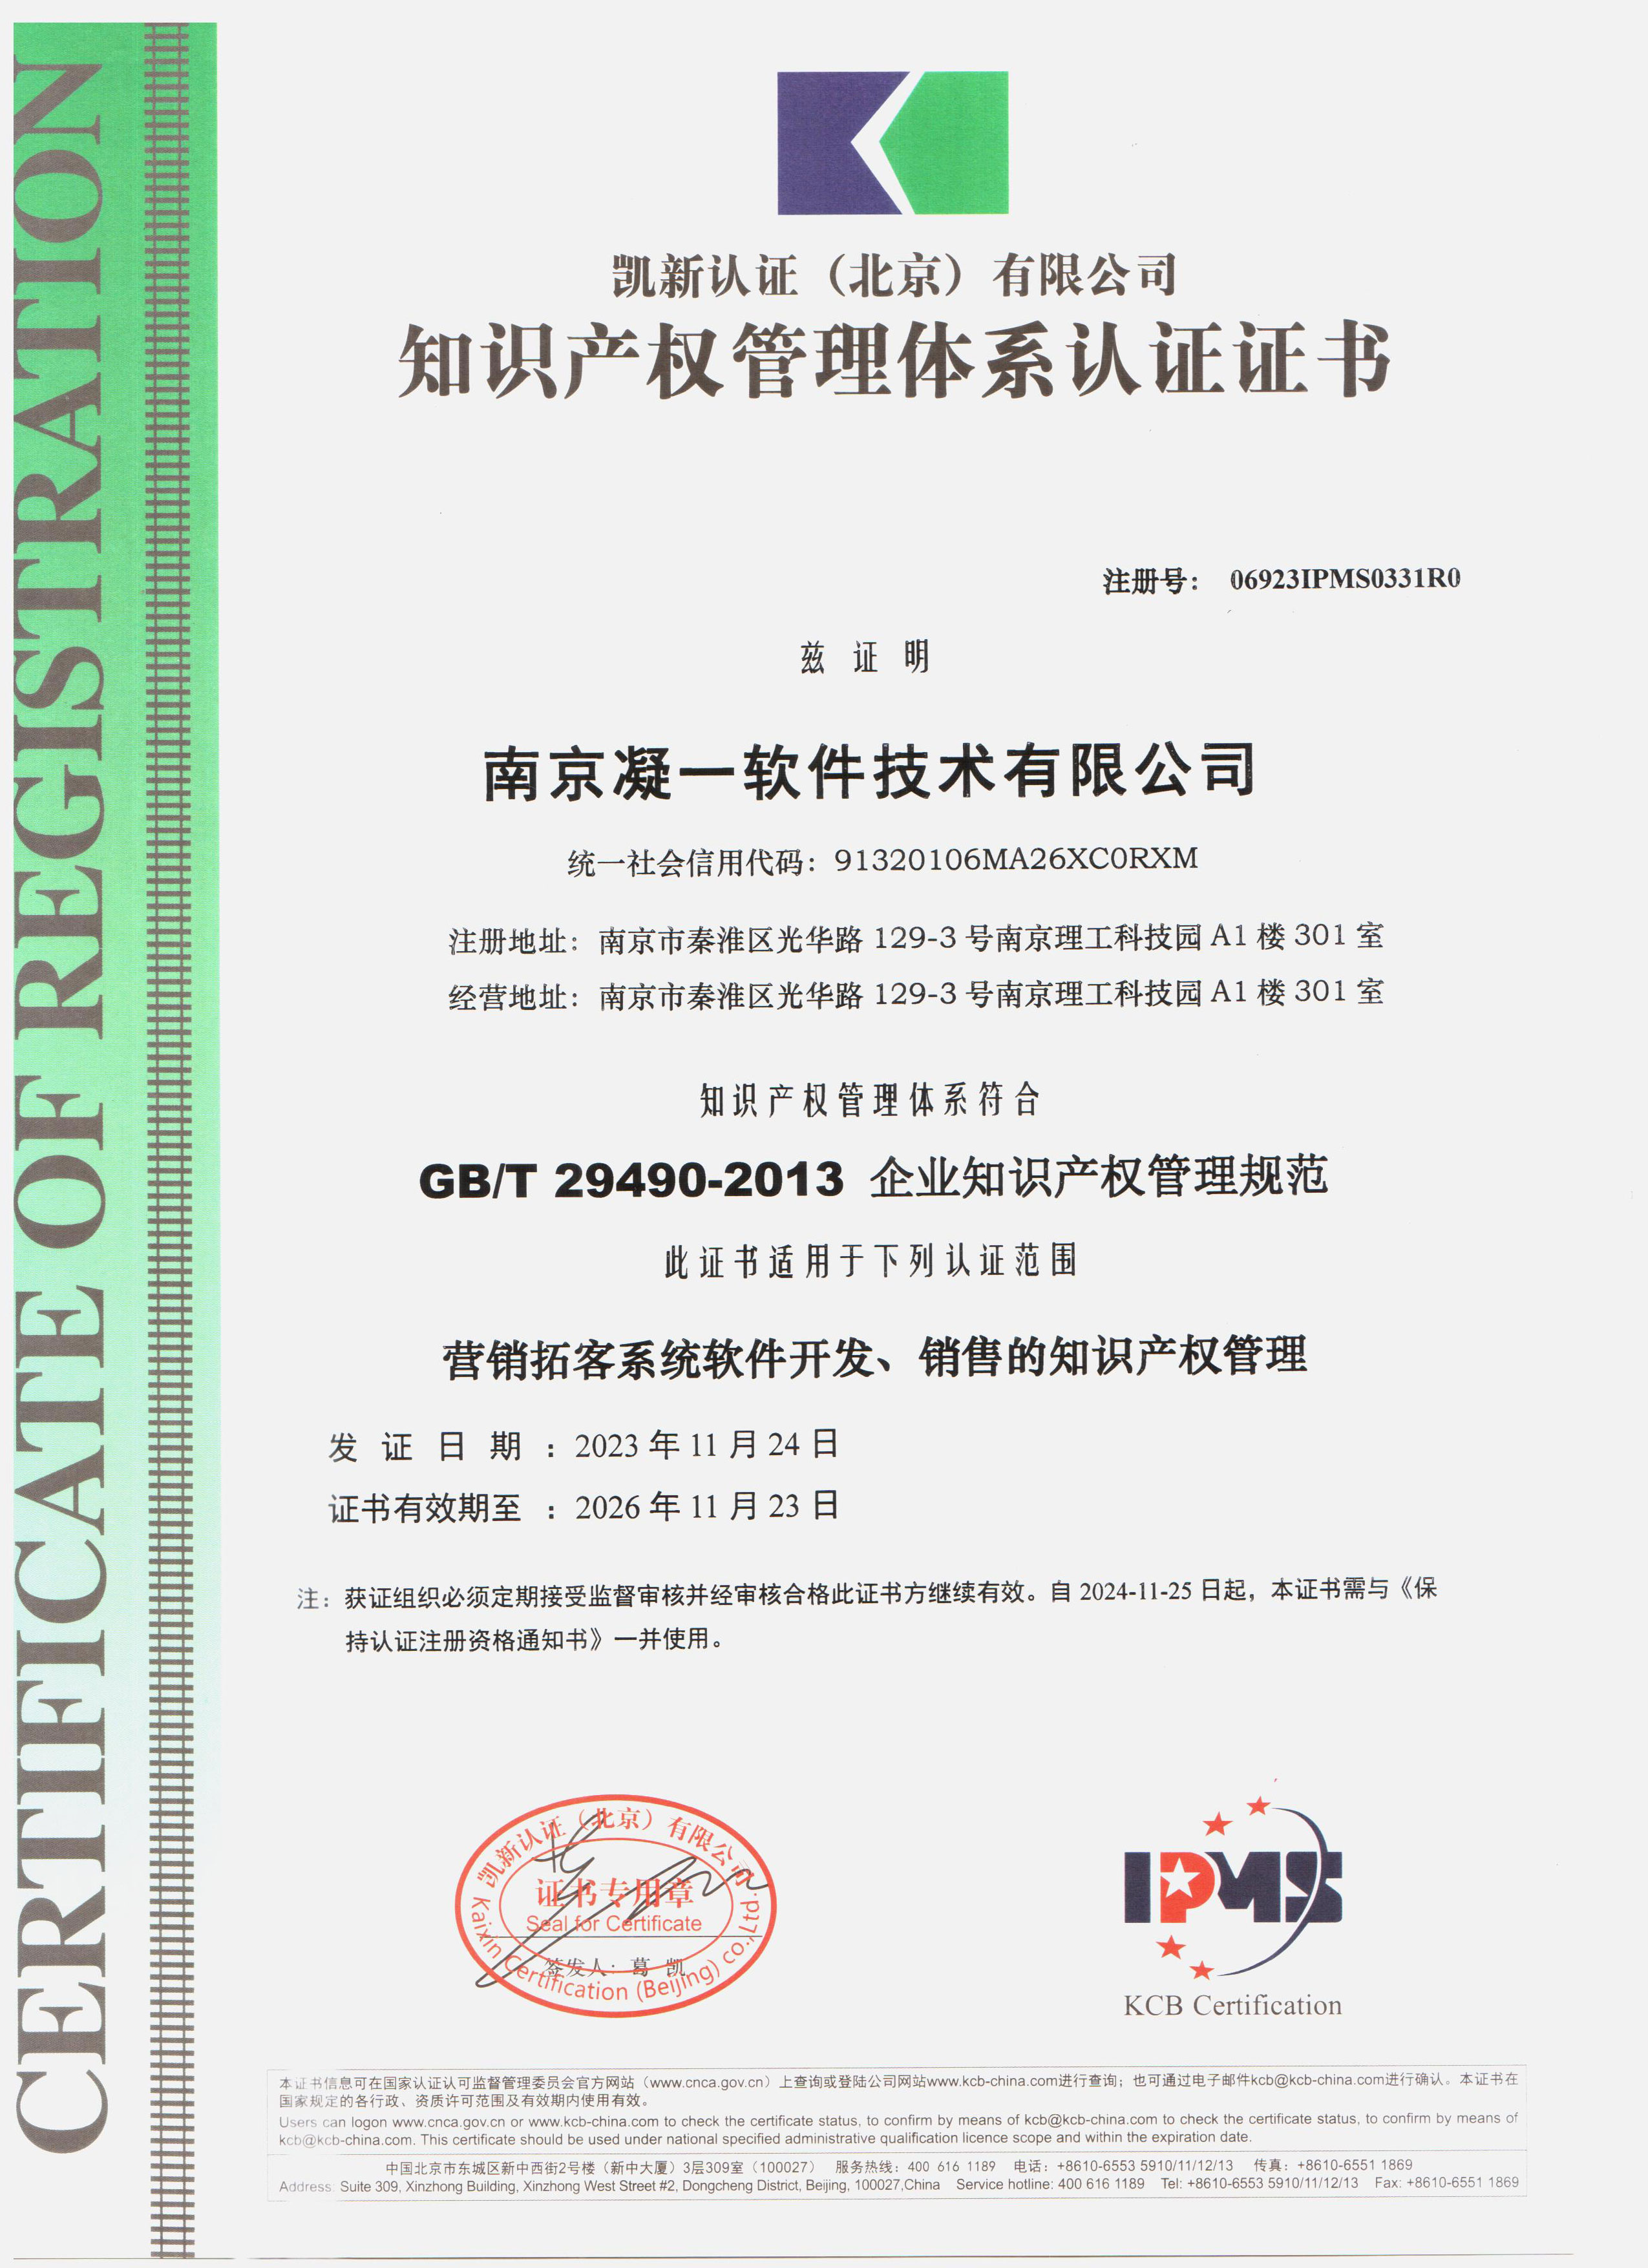 凝一软件荣获GB/T29490-2013国家知识产权贯标体系认证